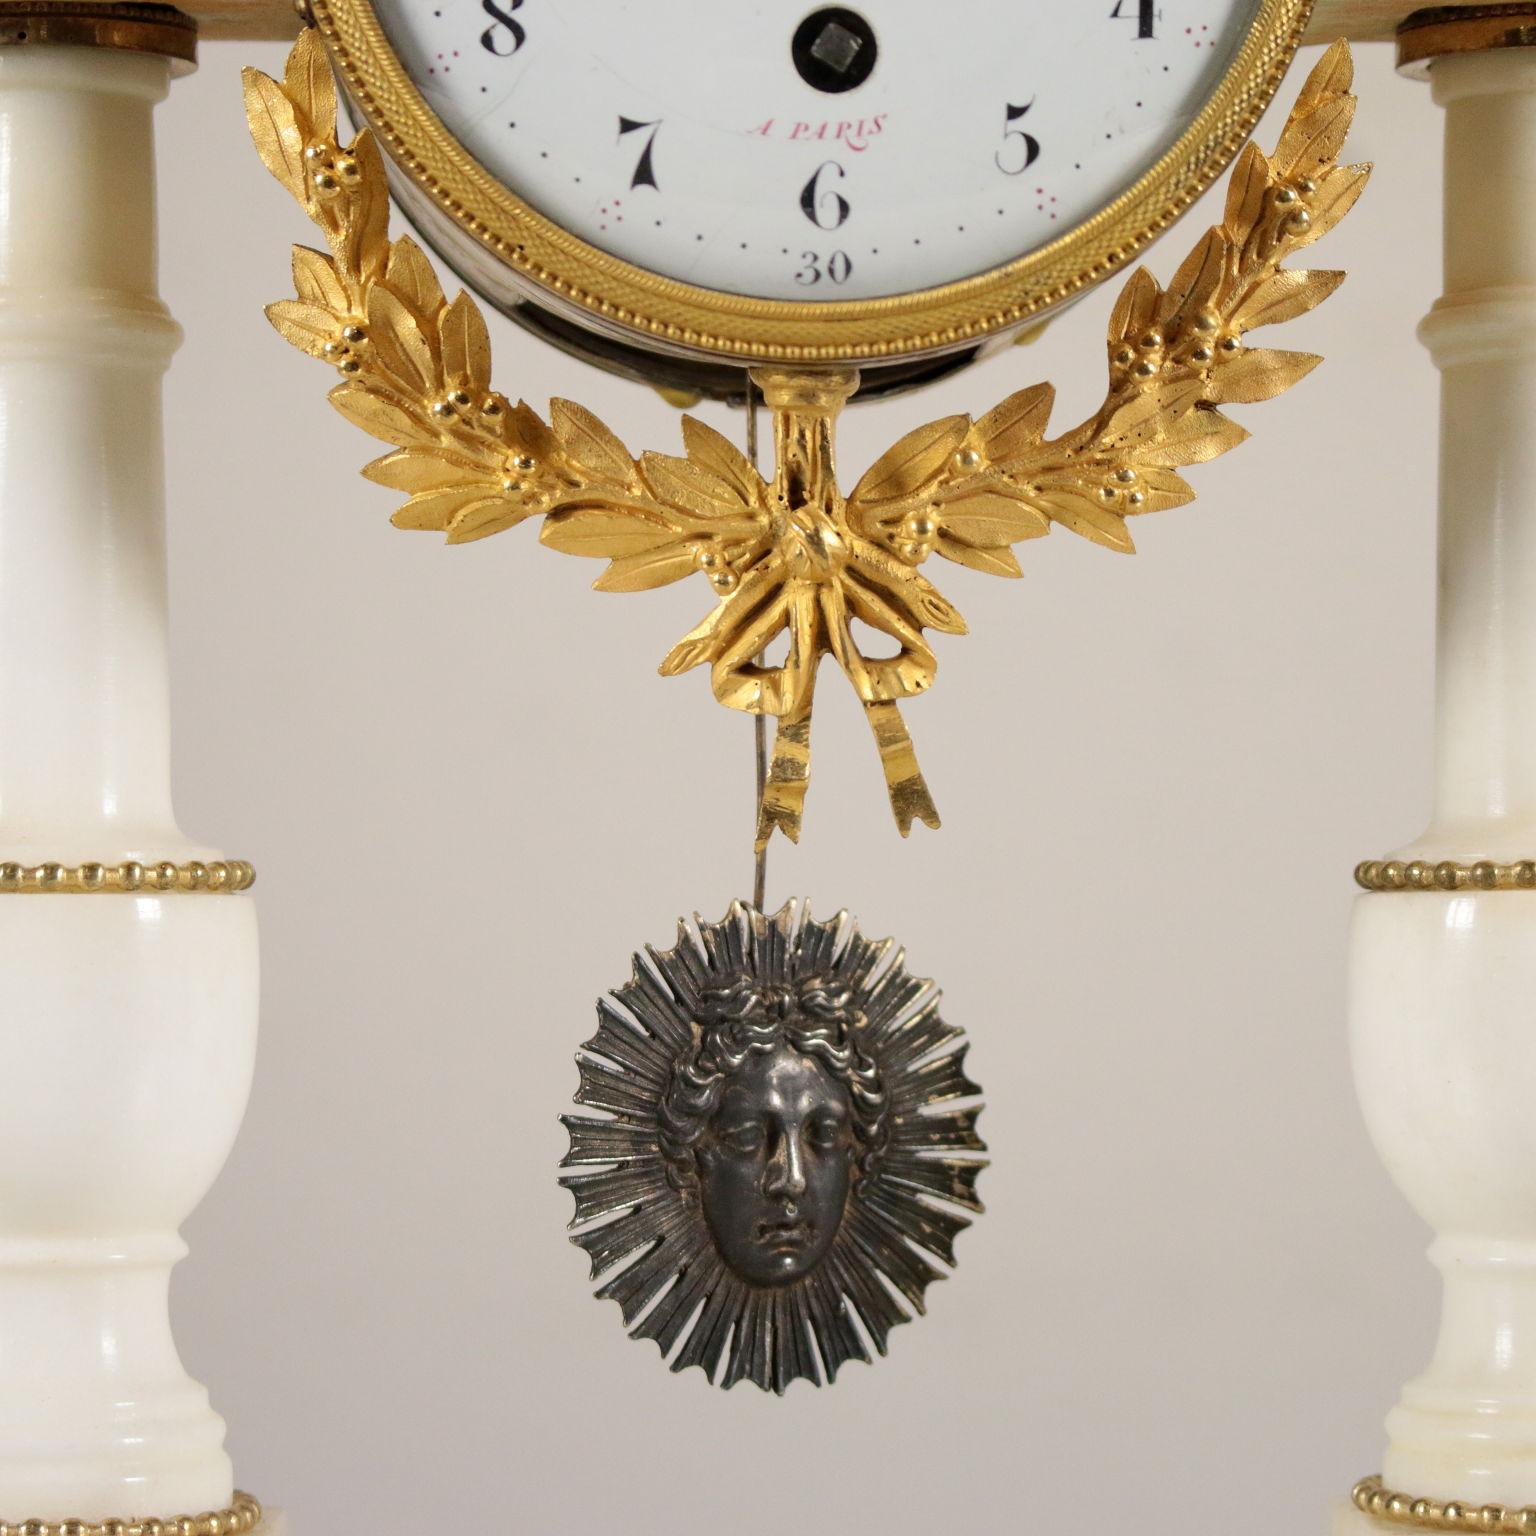 XVIIIe siècle Horloge de table Lèchopiè à Paris Marbre Bronze doré, France, années 1700